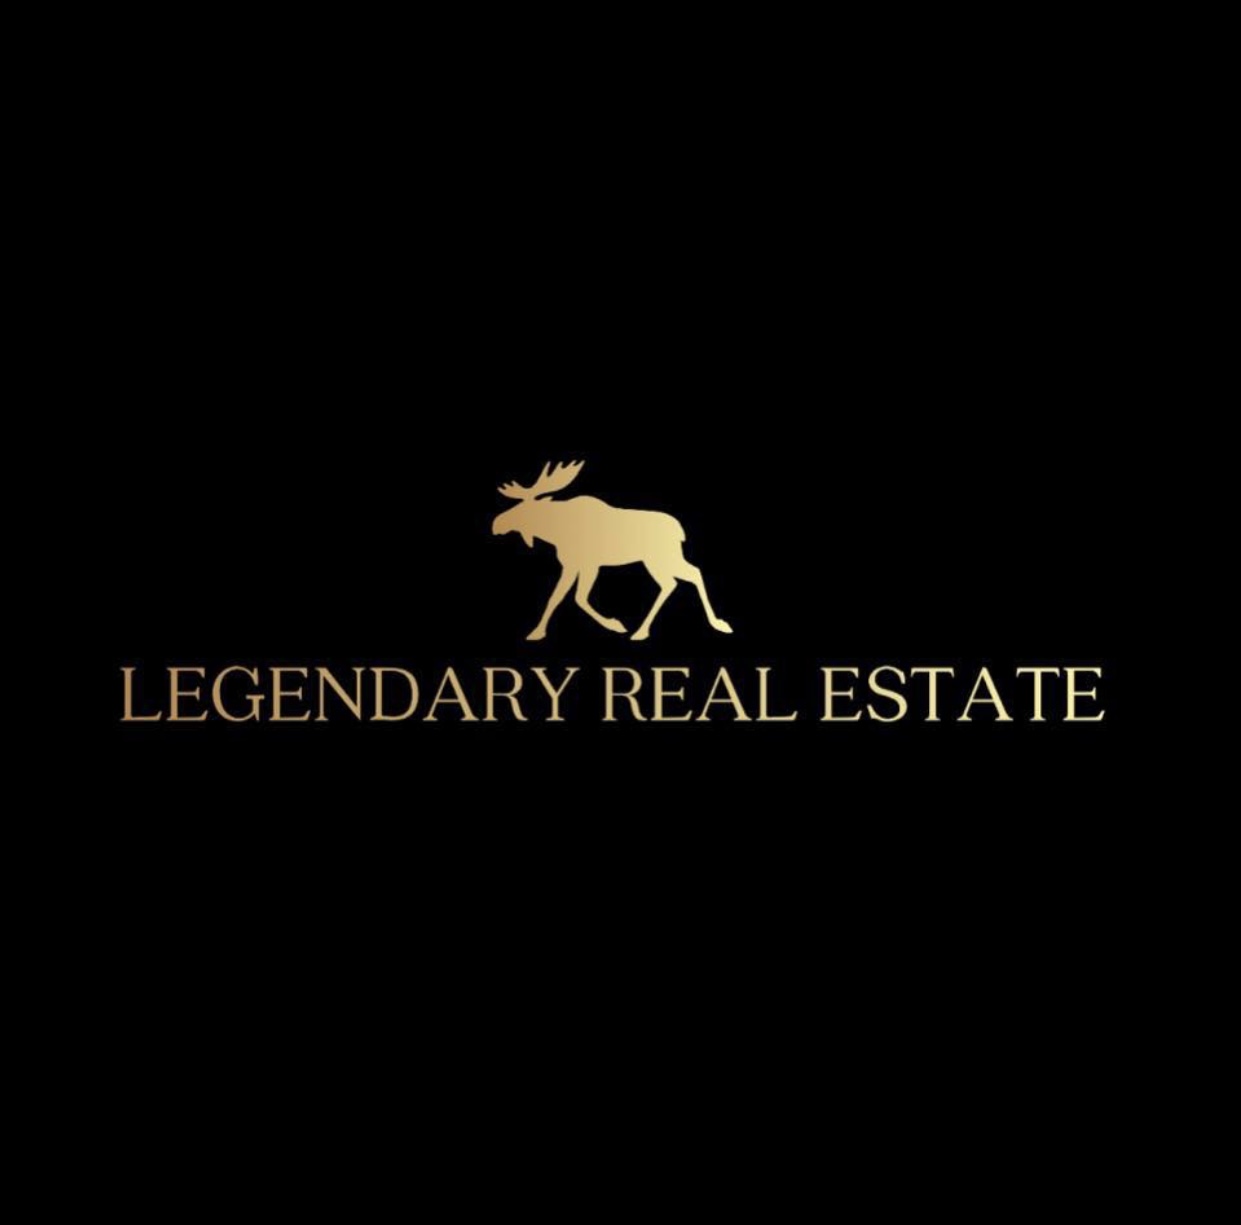 Legendary Real Estate logo